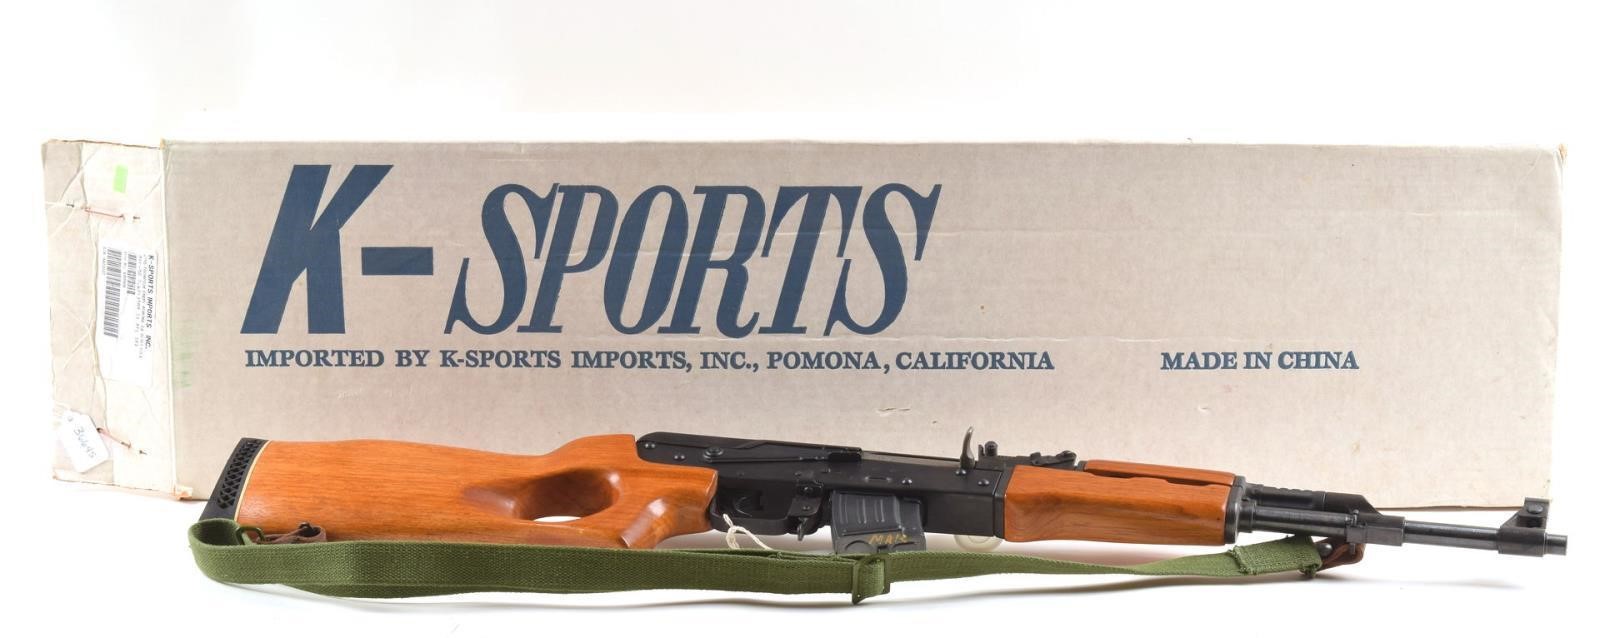 Ray Humphries guns, hunting, and more